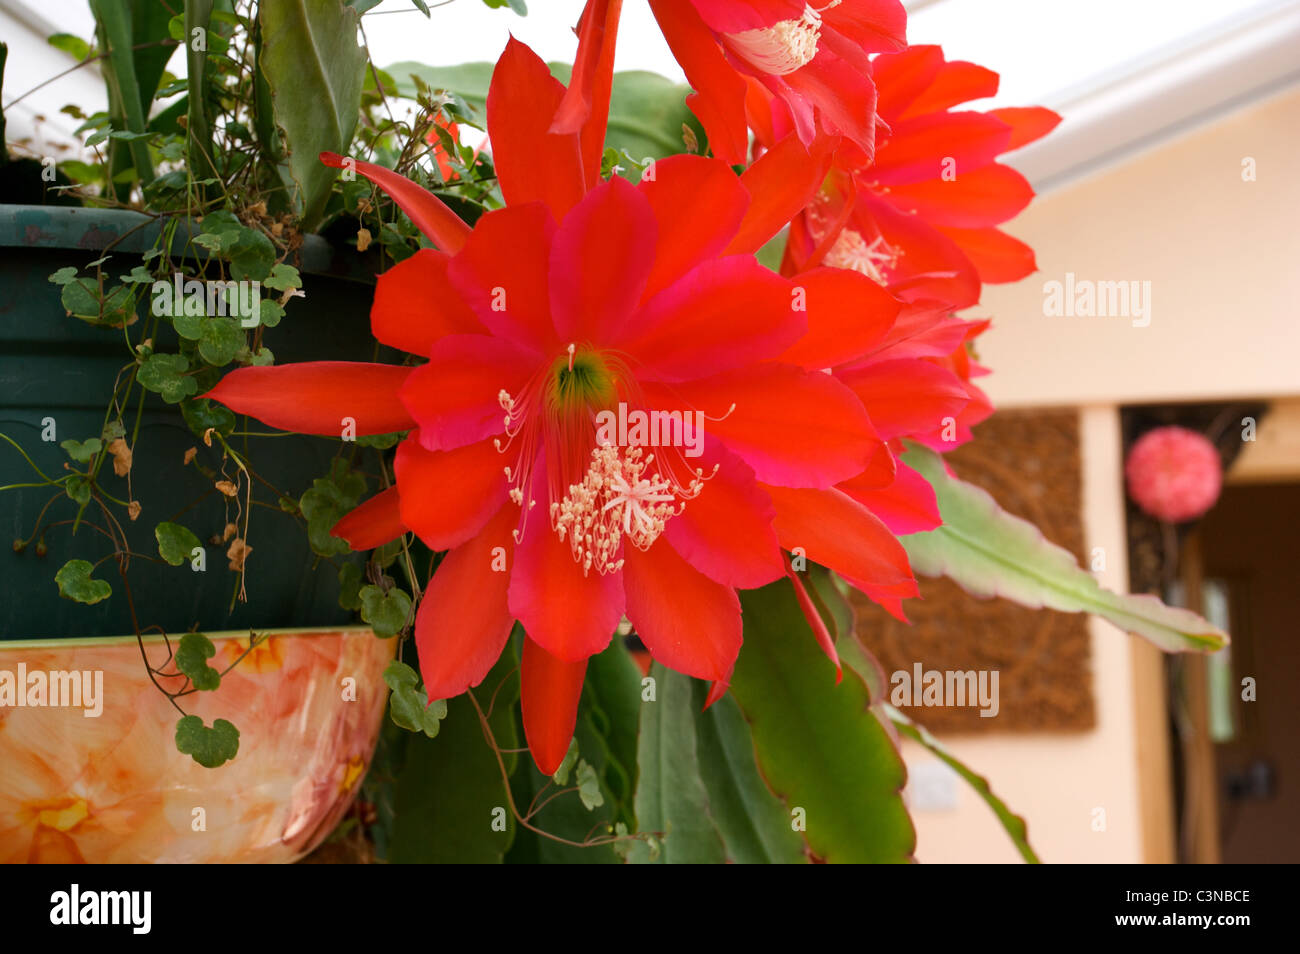 Epiphyllum "Slightly Sassy" red cactus flowers, Stock Photo